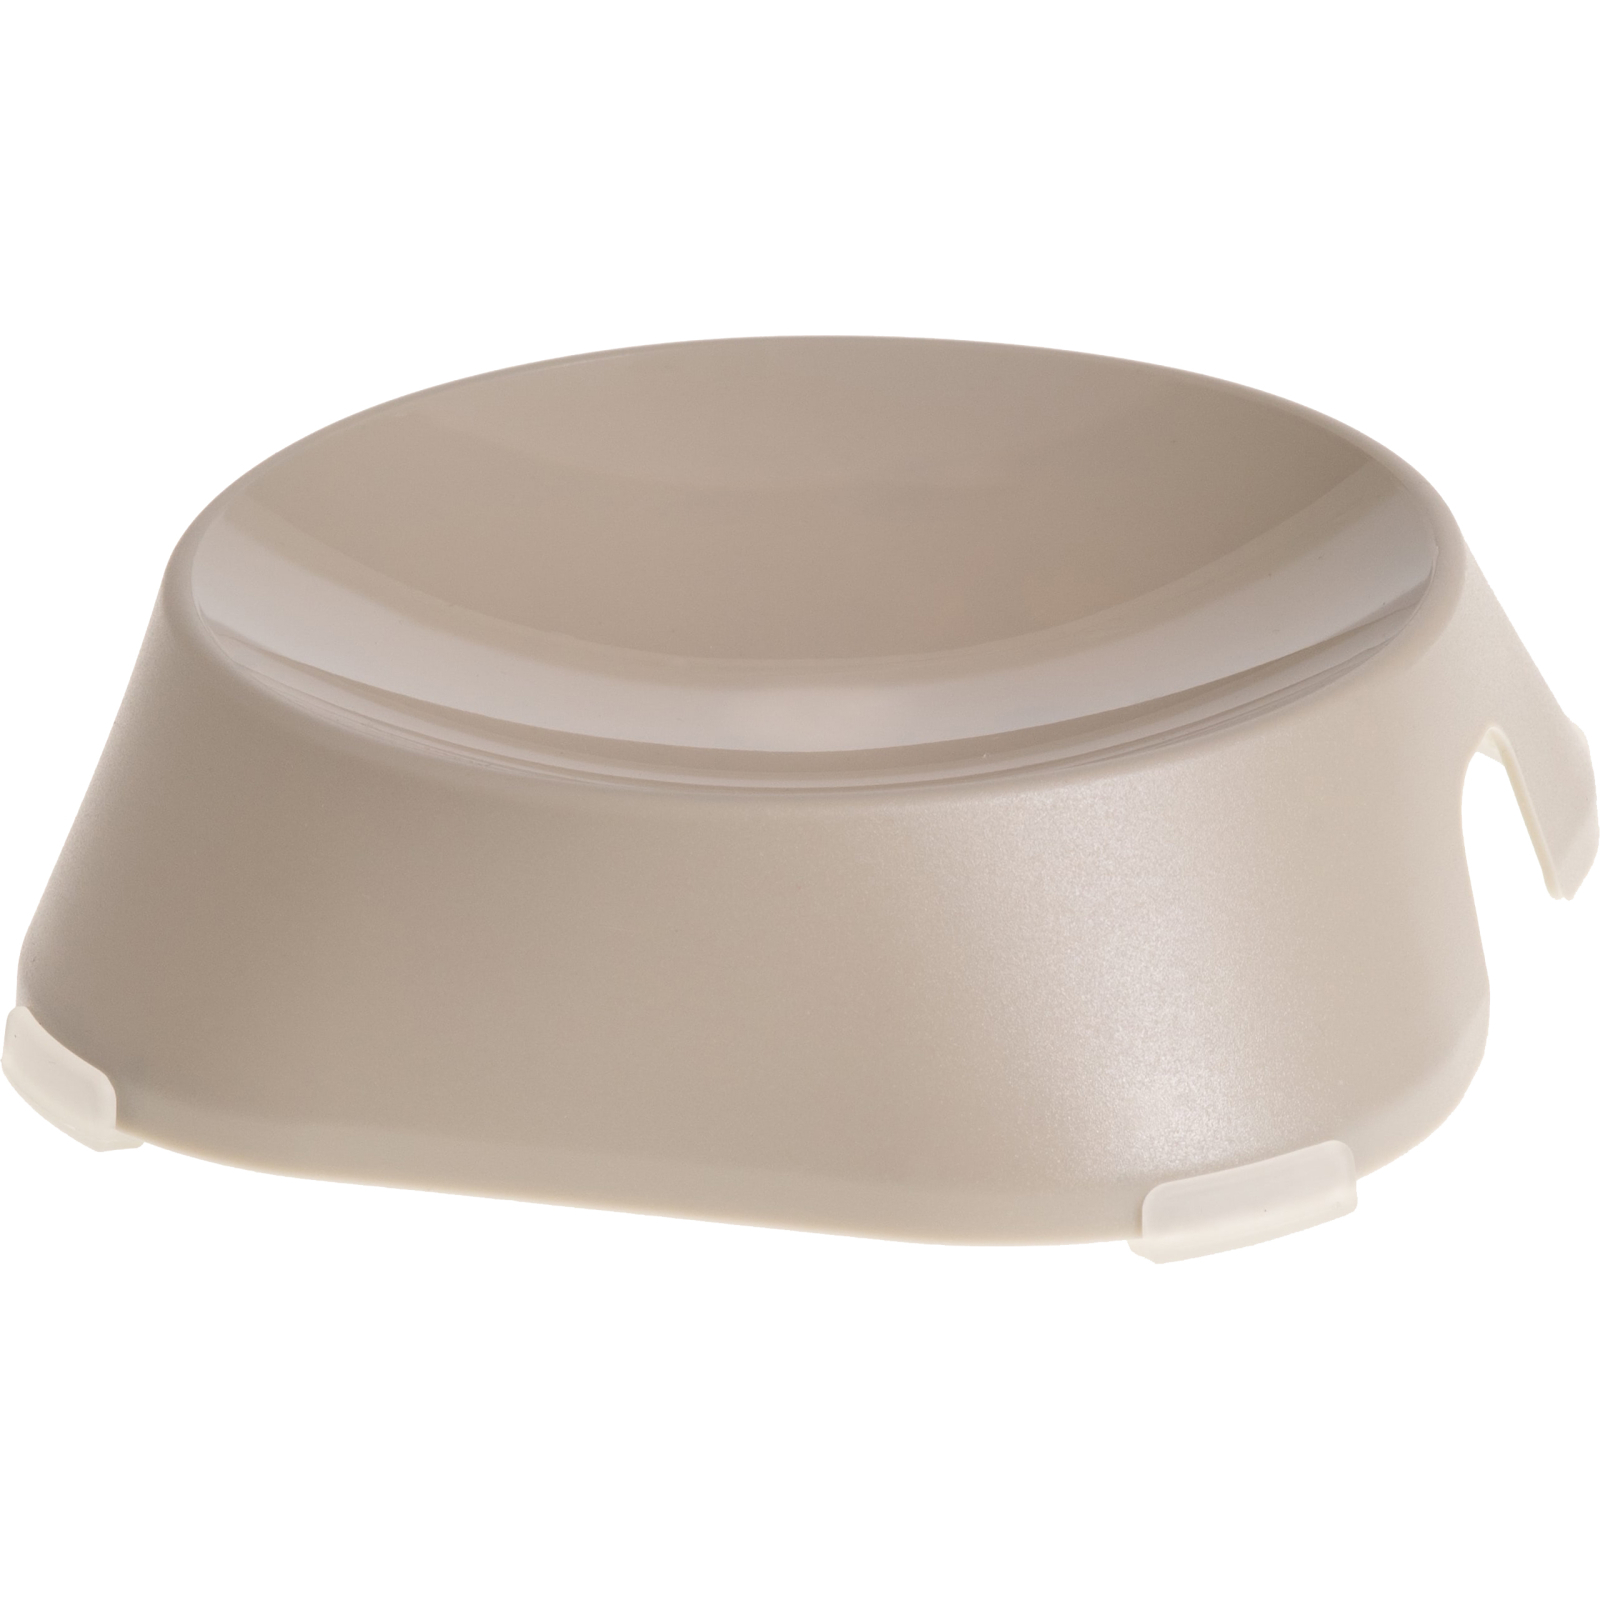 Посуда для кошек Fiboo Flat Bowl миска без антискользких накладок бежевая (FIB0130)